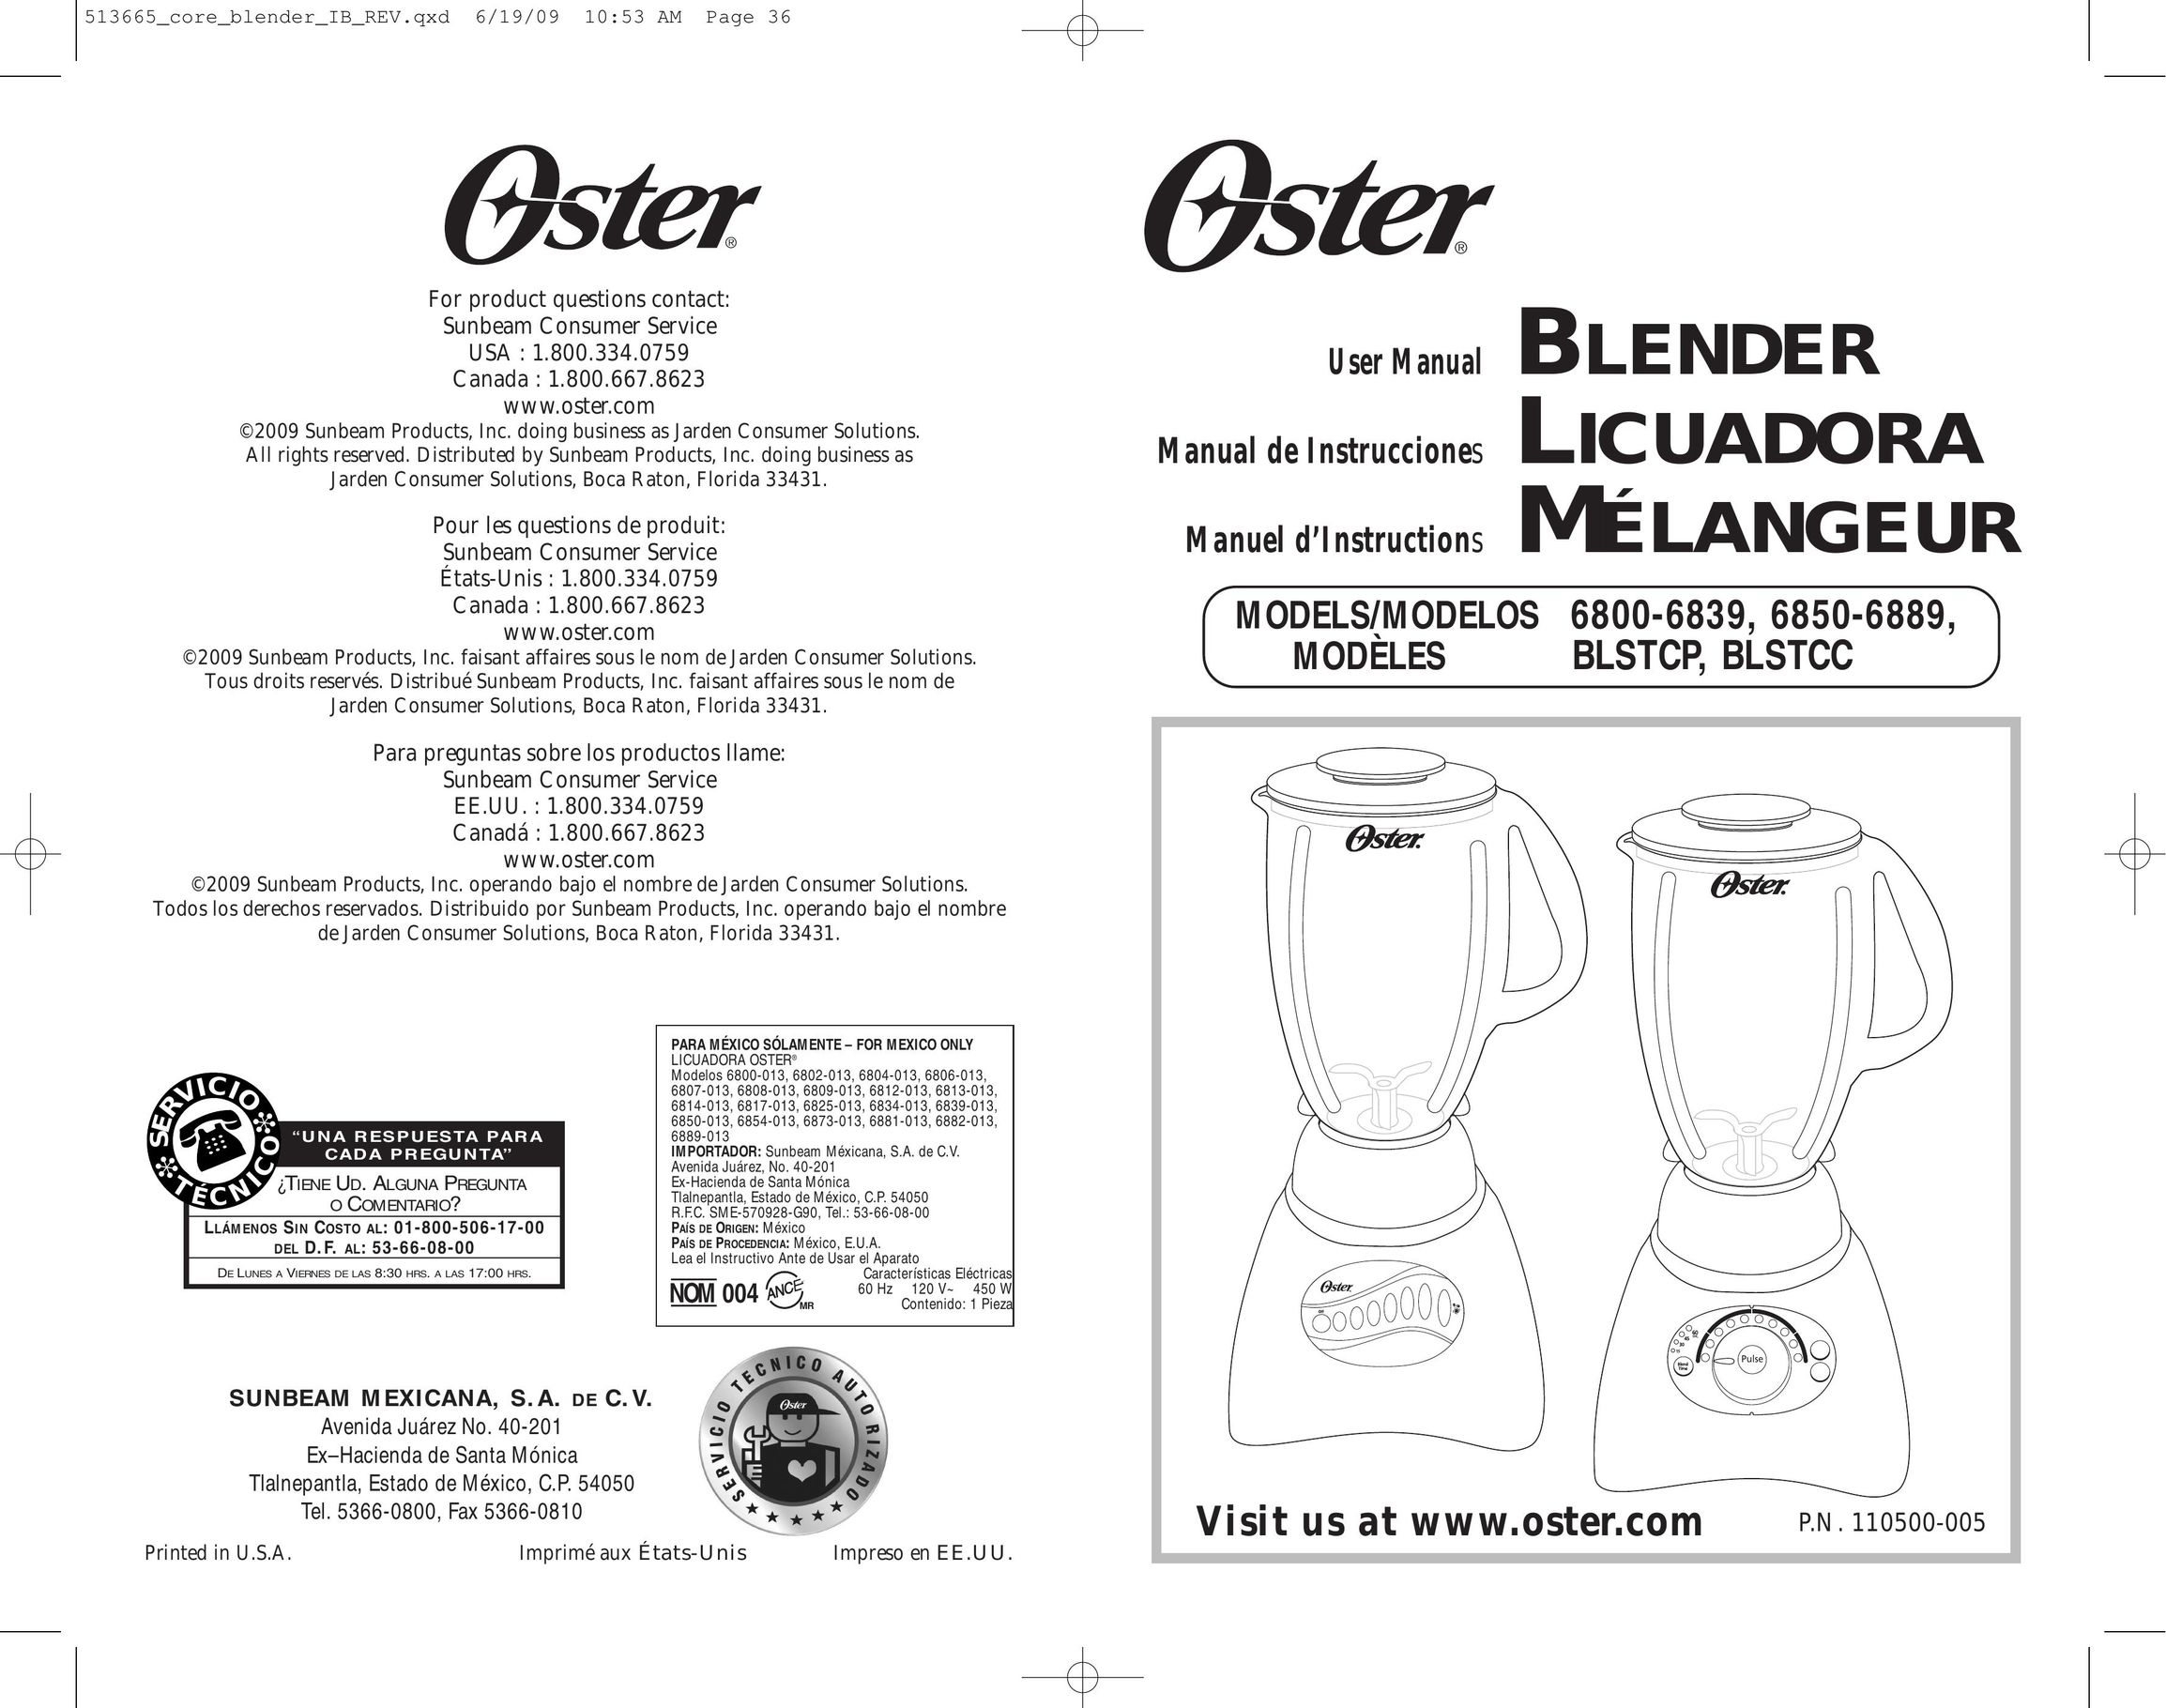 Oster 6800-6839 Blender User Manual